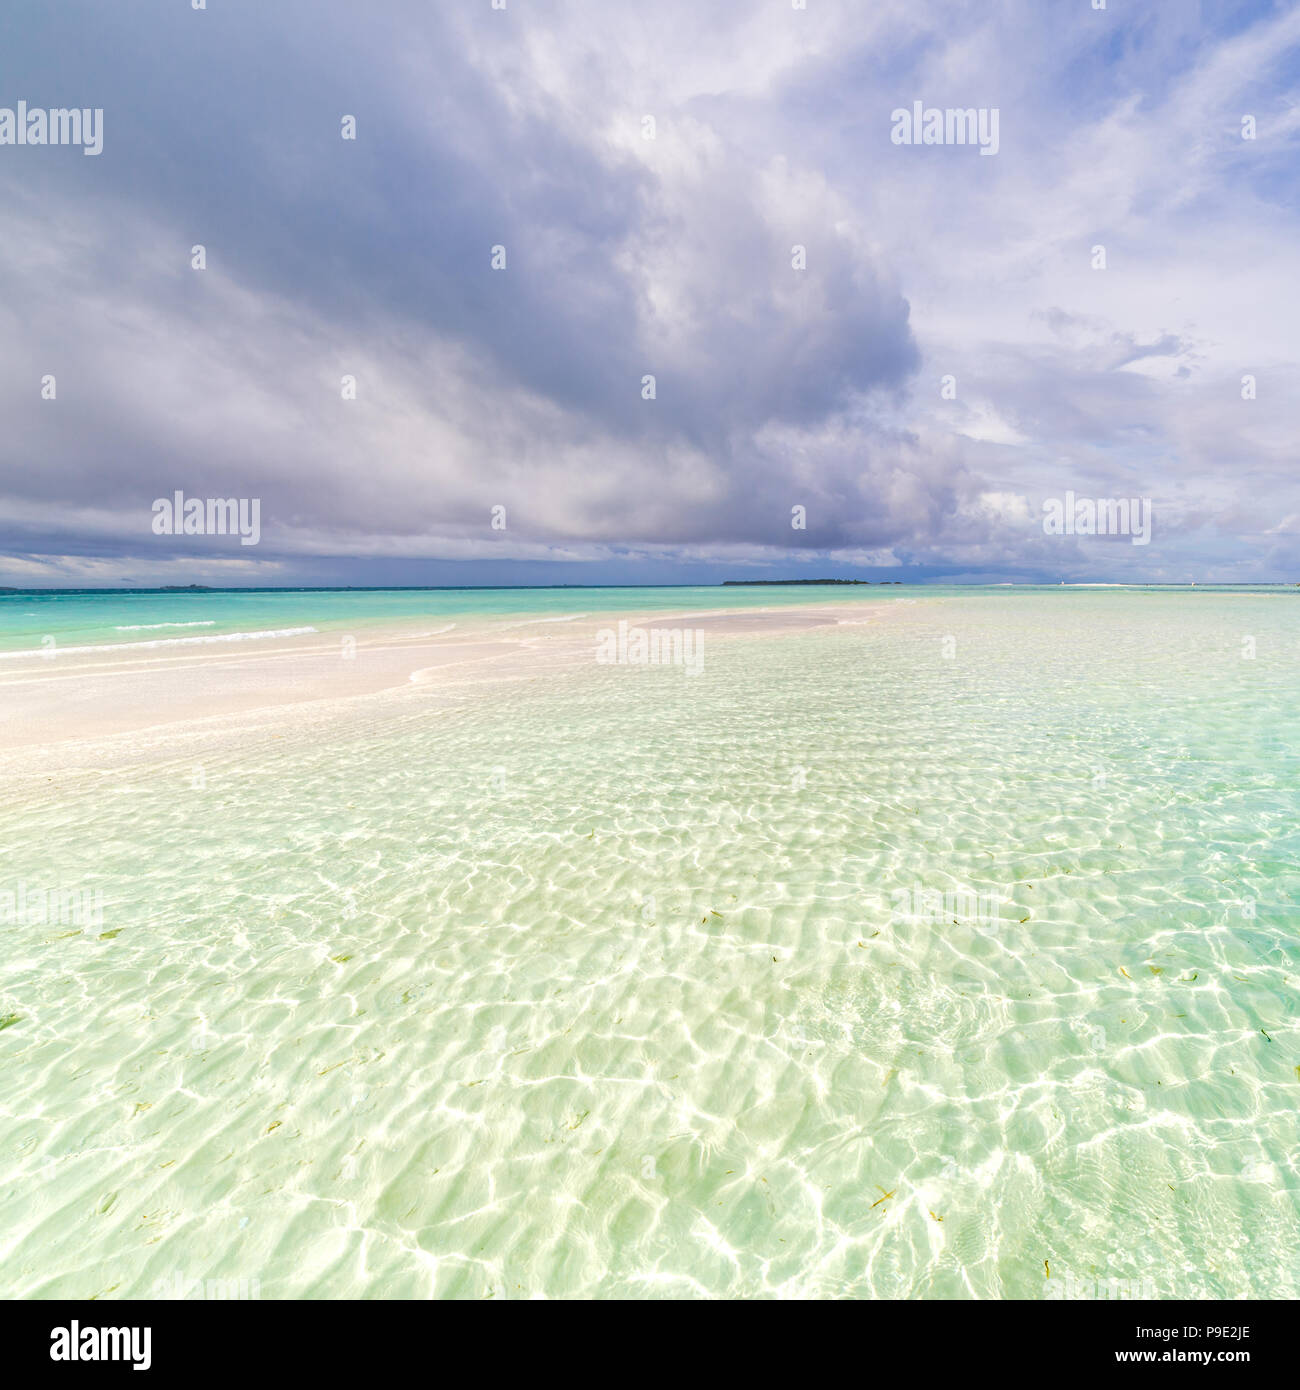 Maldives Paradise beach. De beaux palmiers et plage tropicale. Moody ciel bleu et bleu lagon. Voyage de luxe des vacances, voyages exotiques Banque D'Images